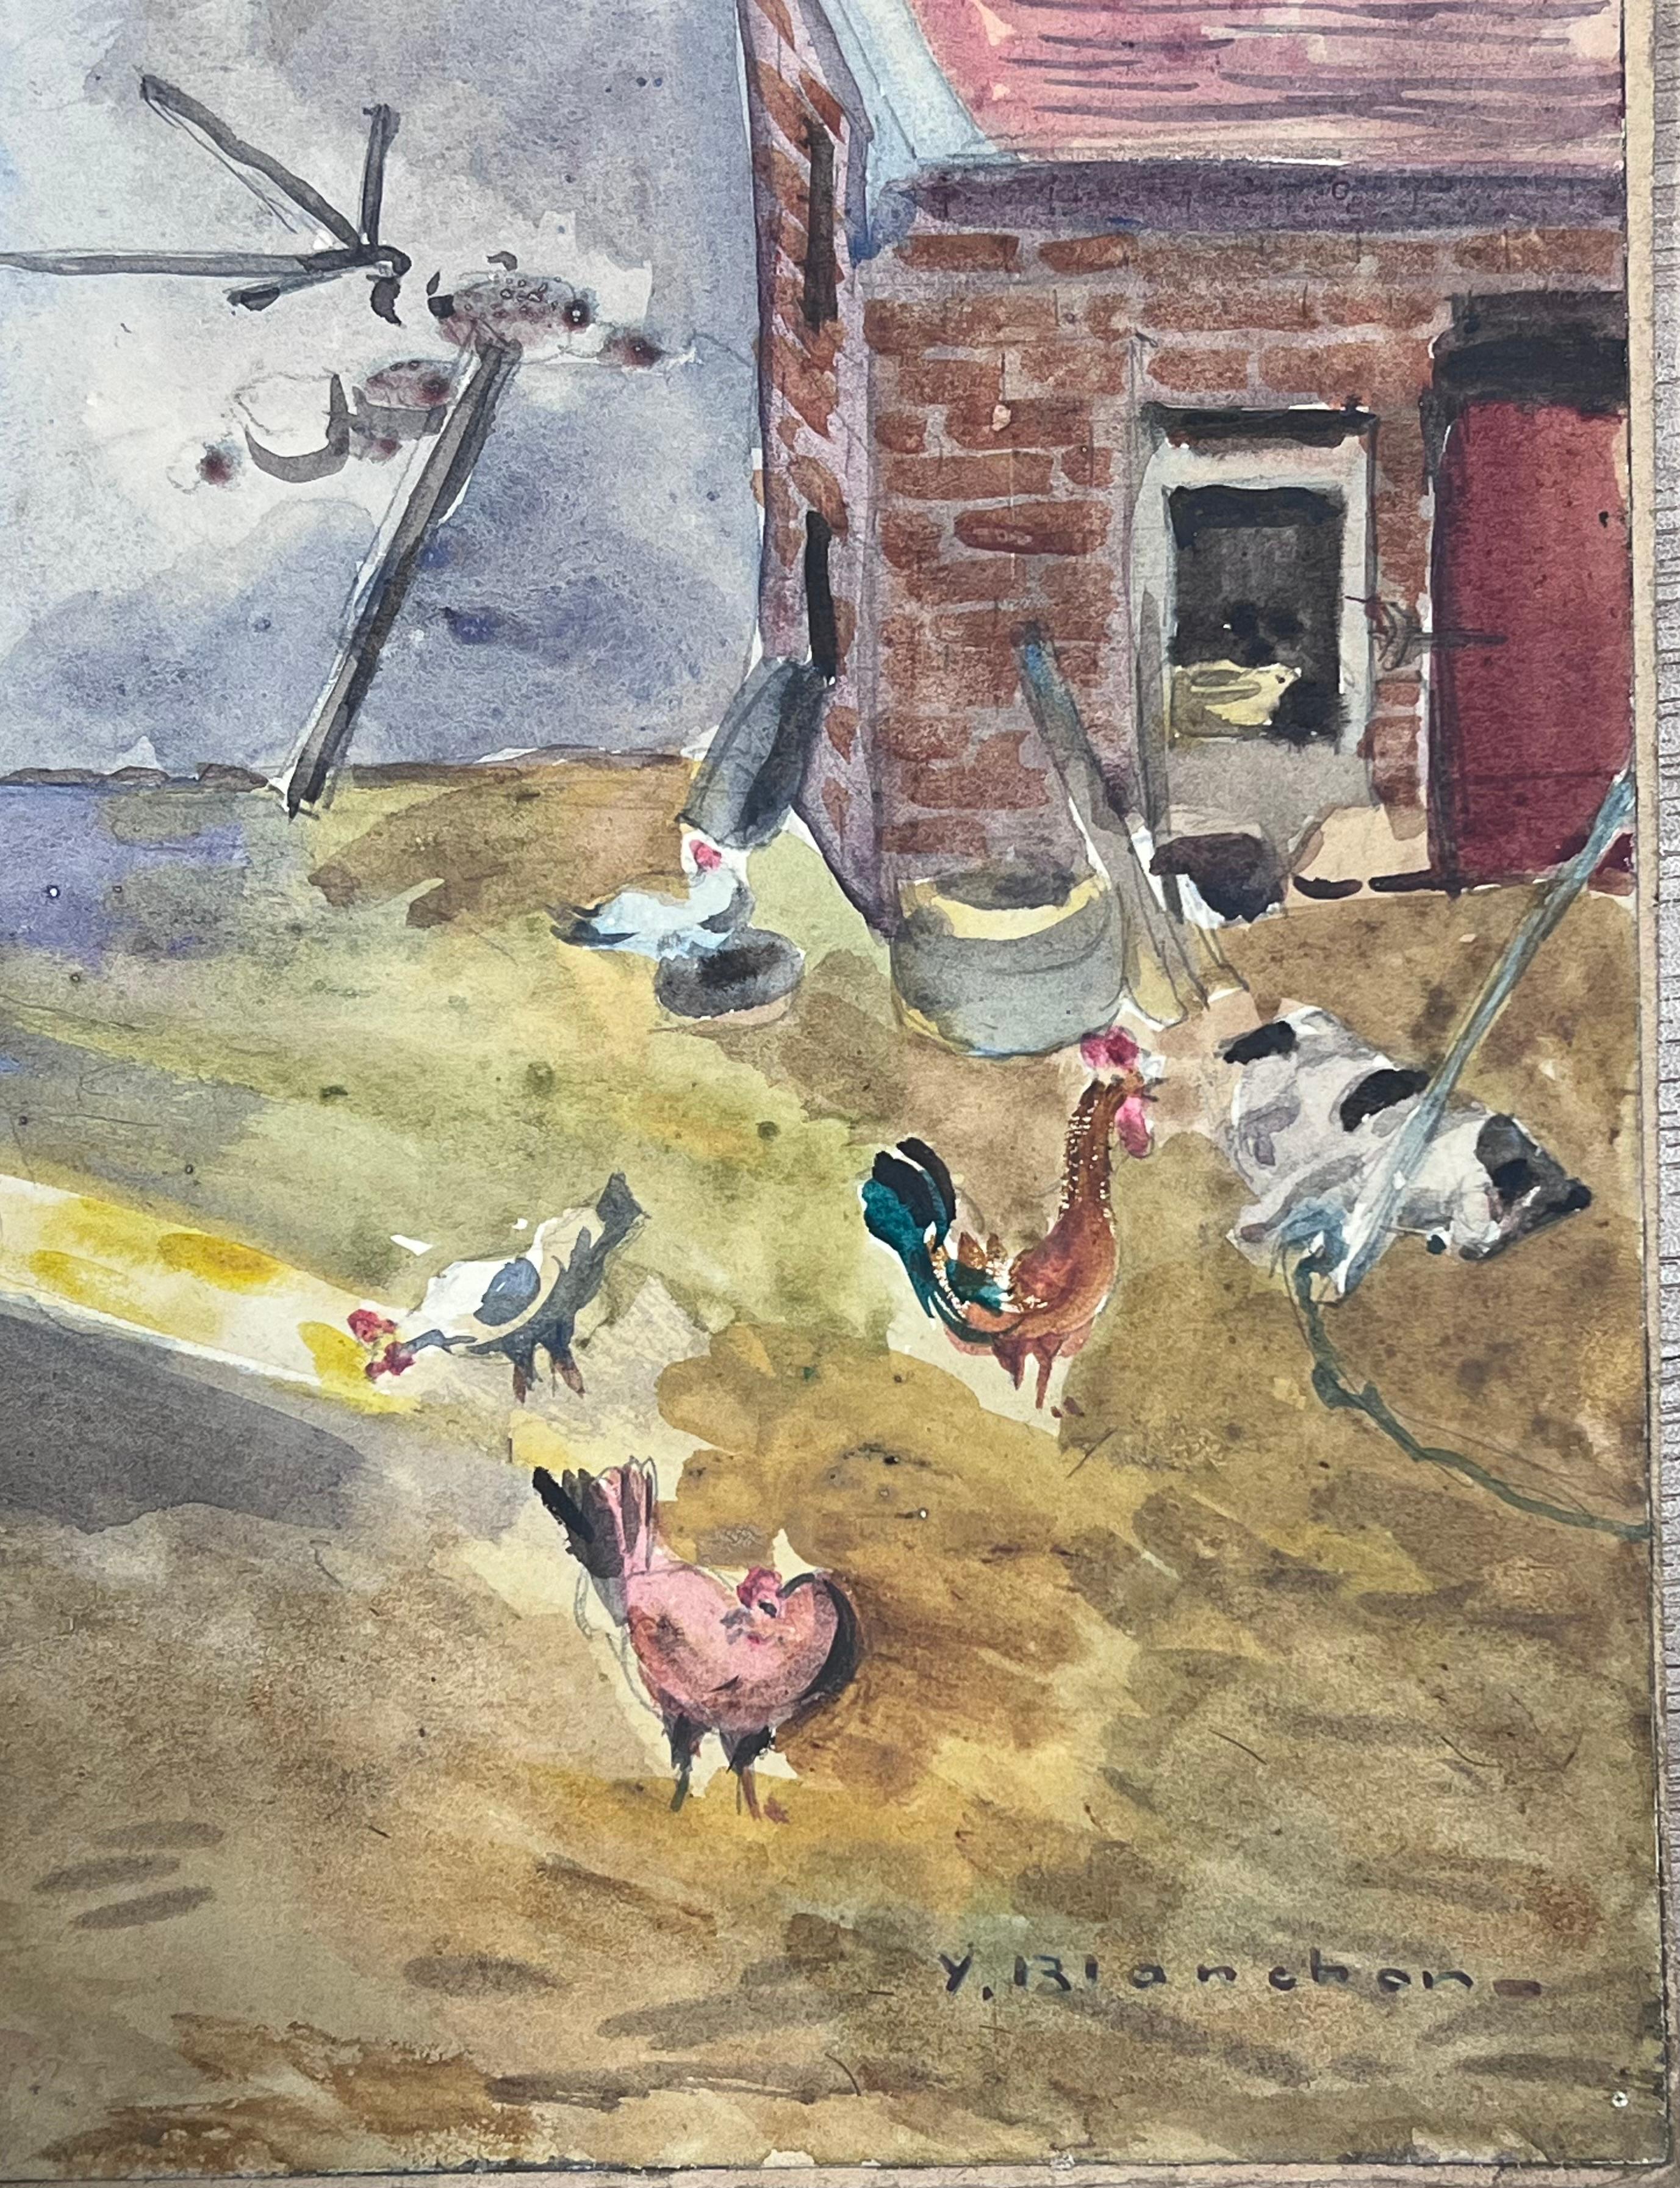 Französische Aquarell-Landschaft, Hühner auf Bauernhof, 1930er Jahre (Impressionismus), Painting, von Y. Blanchon